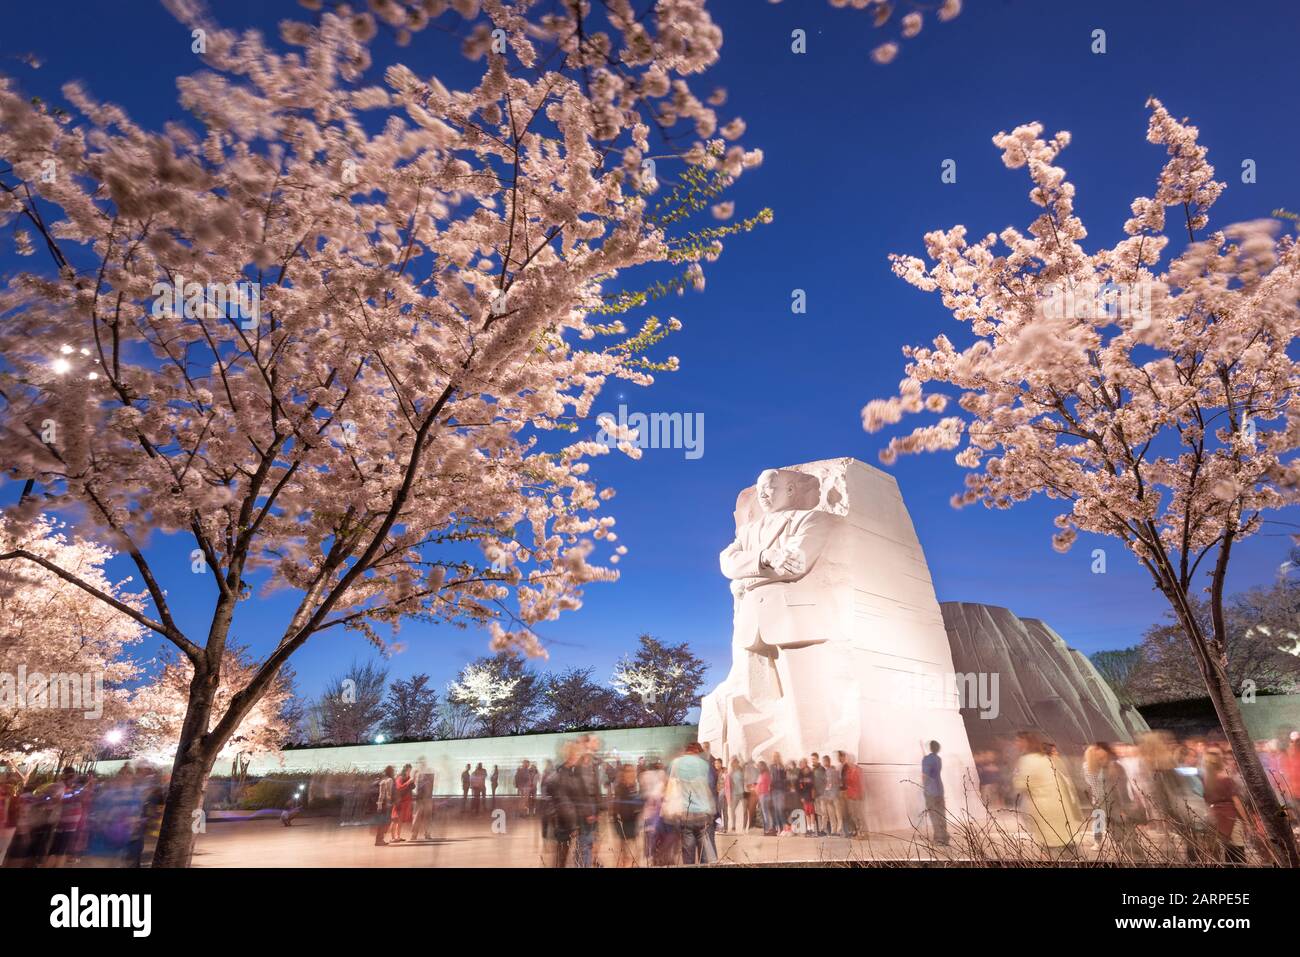 Washington - 12 AVRIL 2015 : le mémorial du leader des droits civiques Martin Luther King Jr. Domine la foule au cours de la saison de printemps à West Potom Banque D'Images